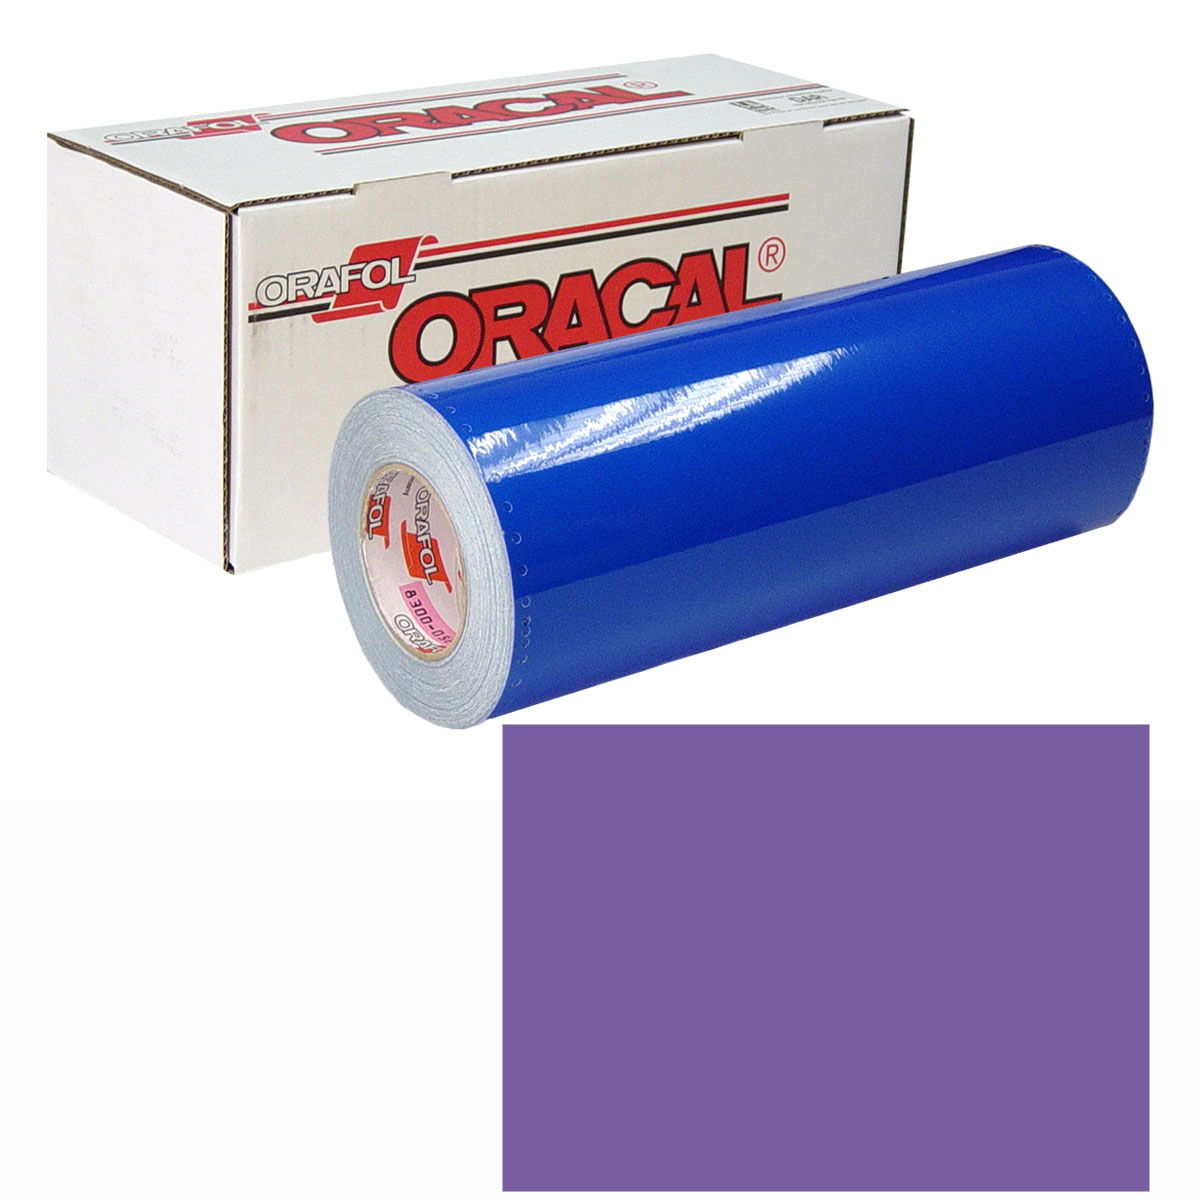 ORACAL 631 Unp 24in X 50yd 043 Lavender